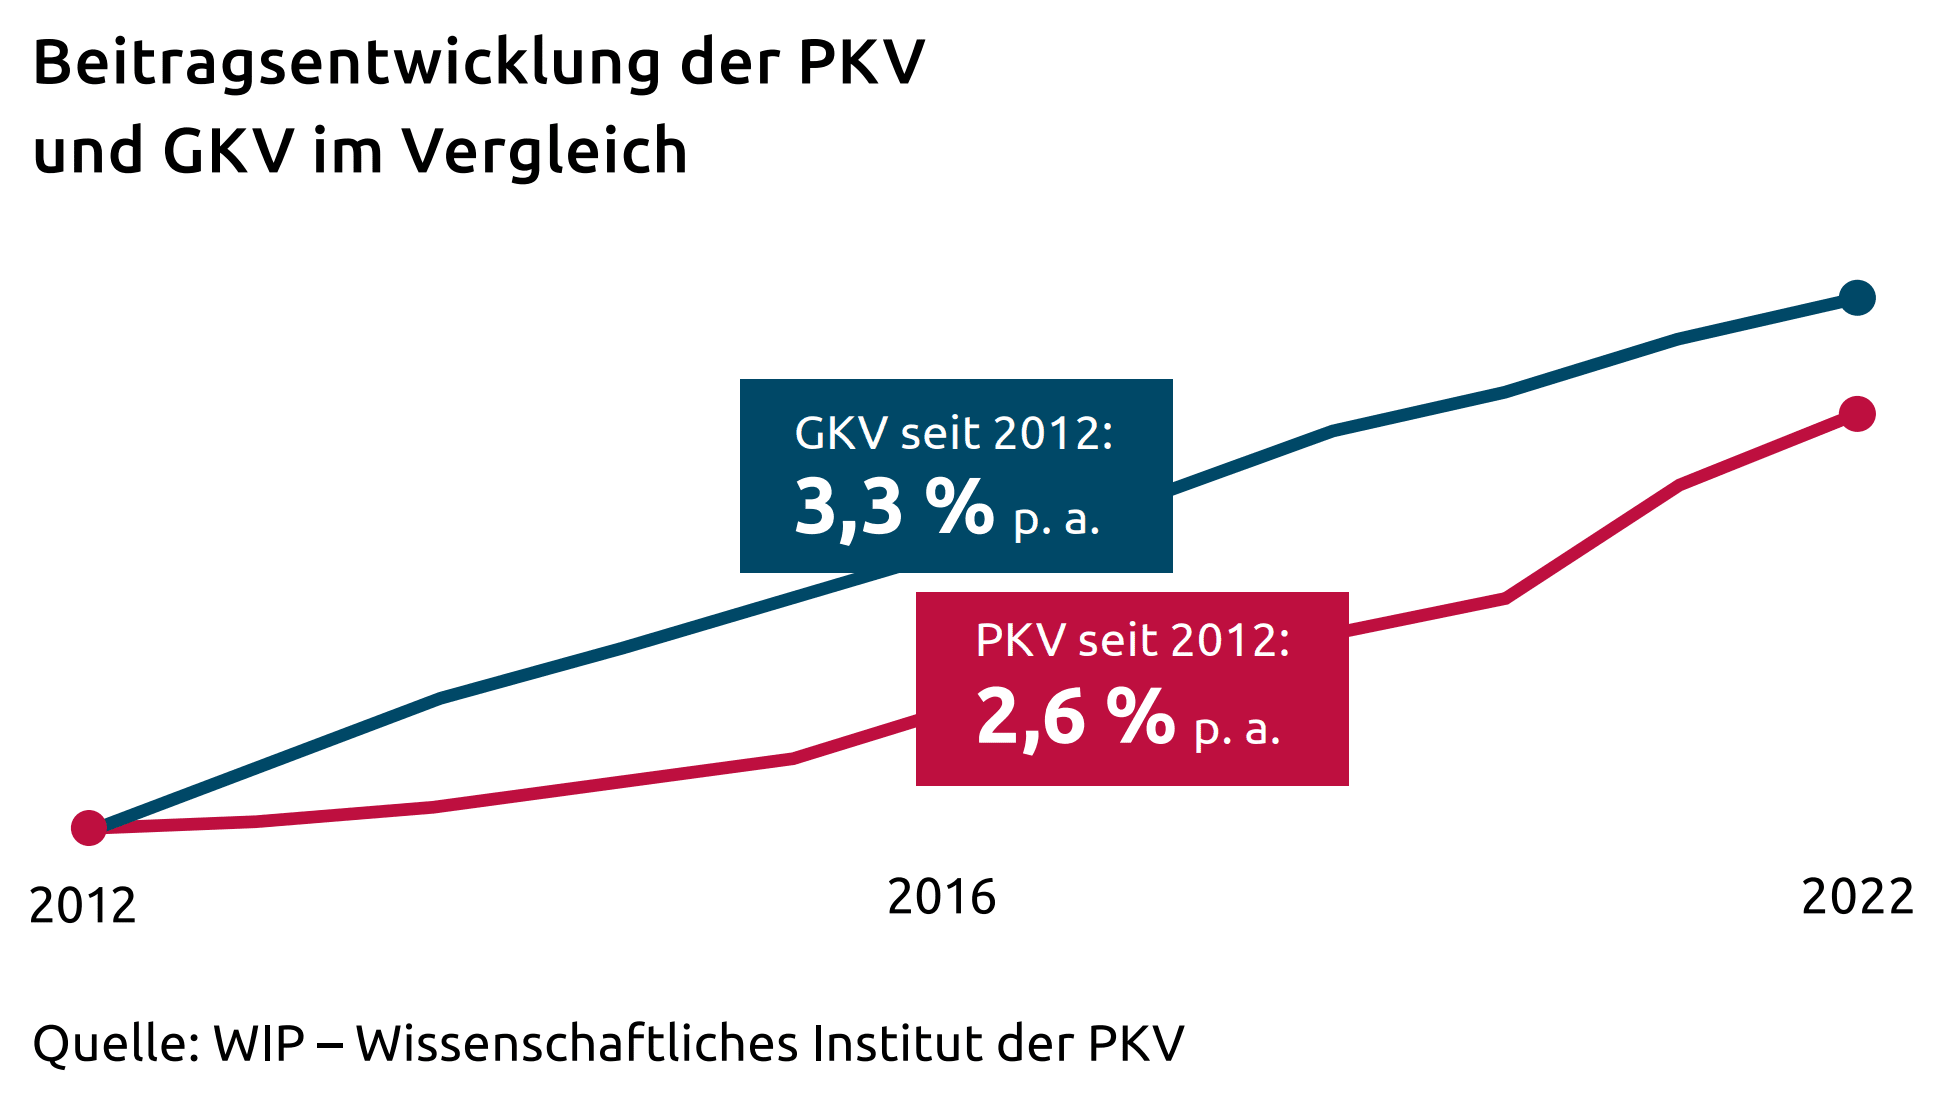 Beitragsentwicklung der PKV und GKV im Vergleich